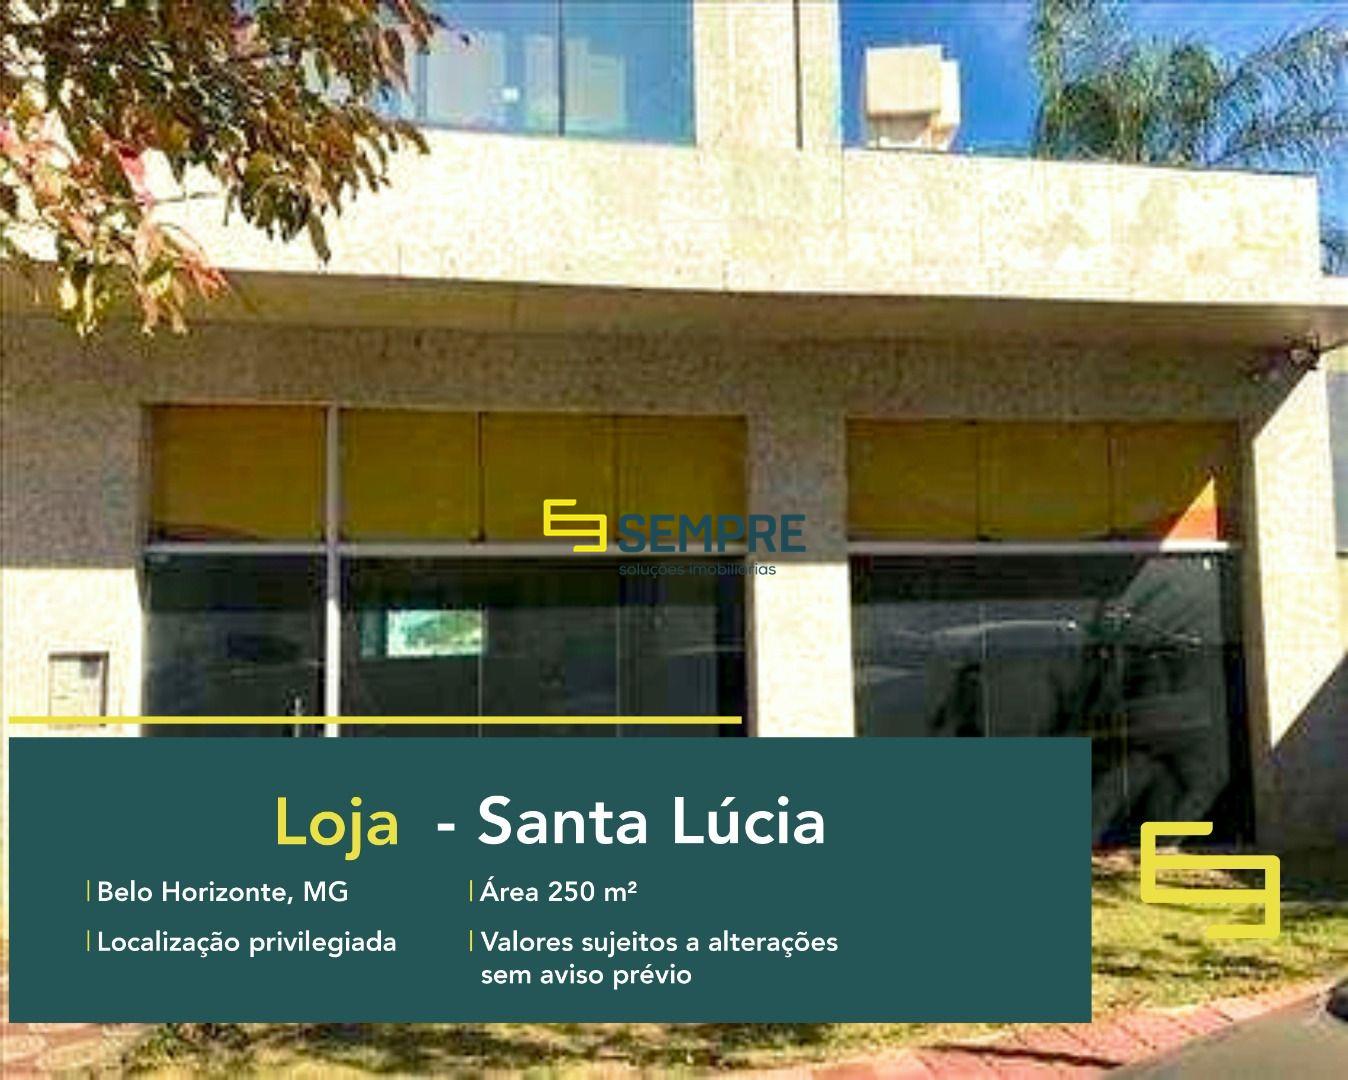 Loja para alugar no Santa Lúcia em BH em excelente localização. O Estabelecimento comercial para alugar, conta sobretudo, com área de 250 m².